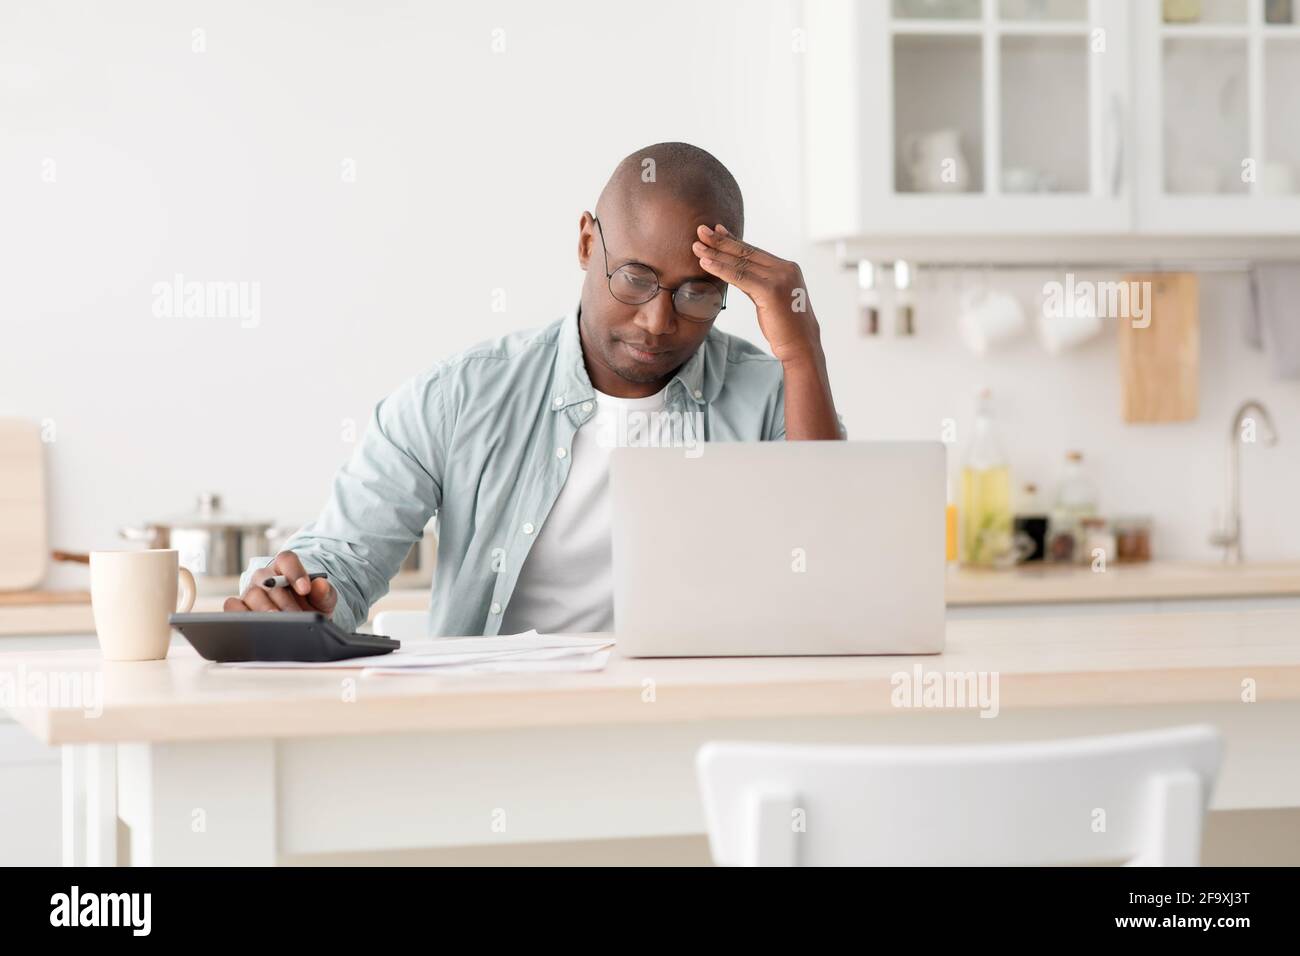 Homme noir mature stressé utilisant la calculatrice et ordinateur portable, le calcul des taxes, le contrôle des dépenses mensuelles Banque D'Images